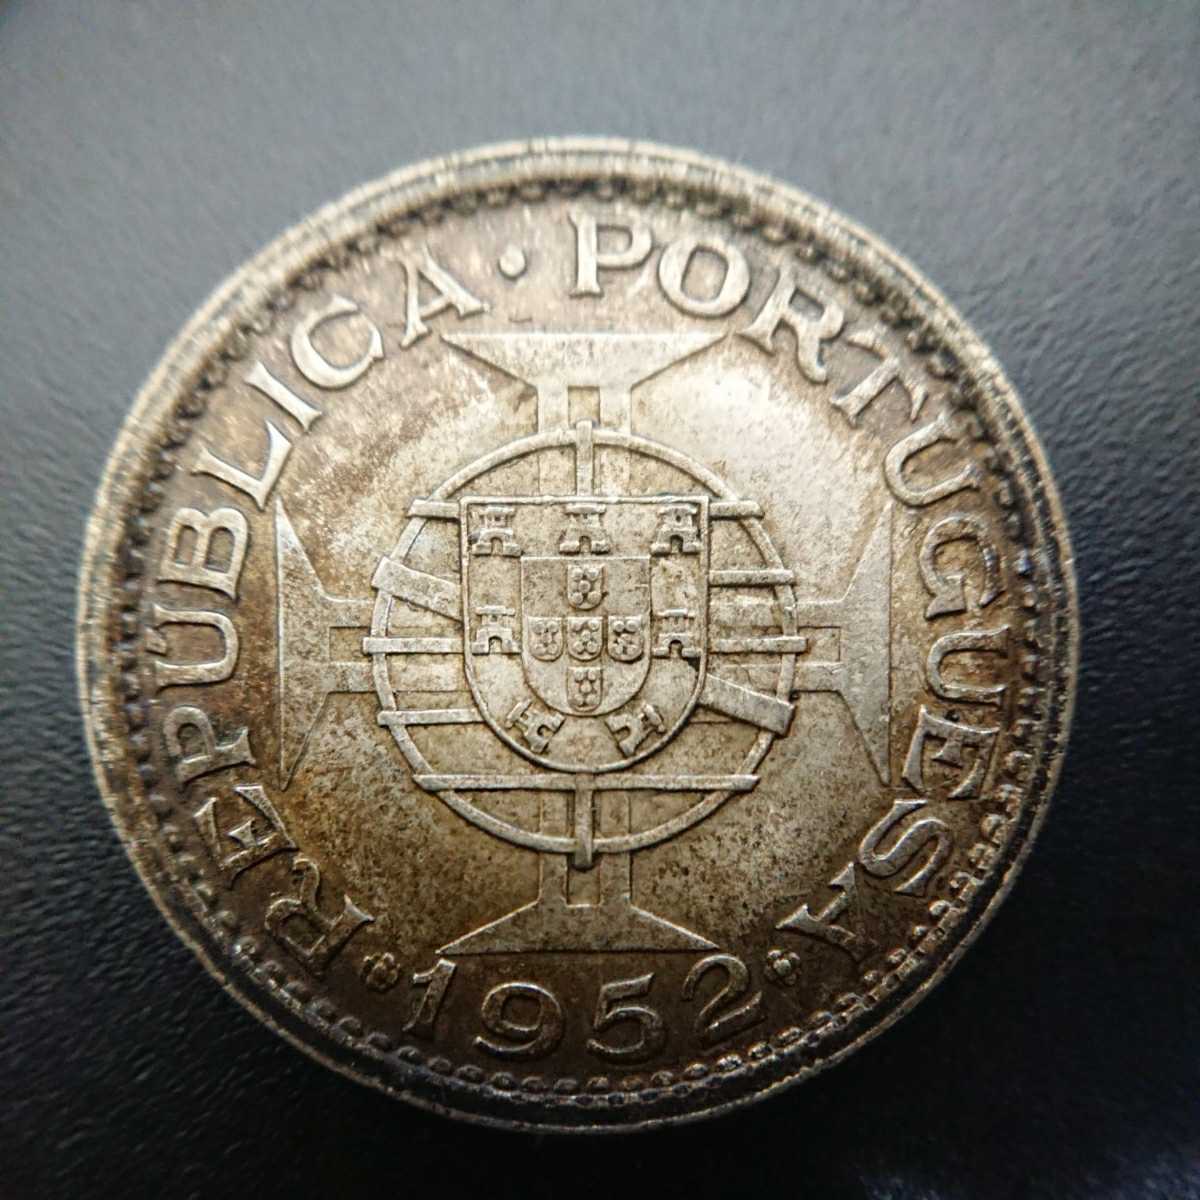 ポルトガル領 アンゴラ共和国 2.5エスクード 銀貨
1956年